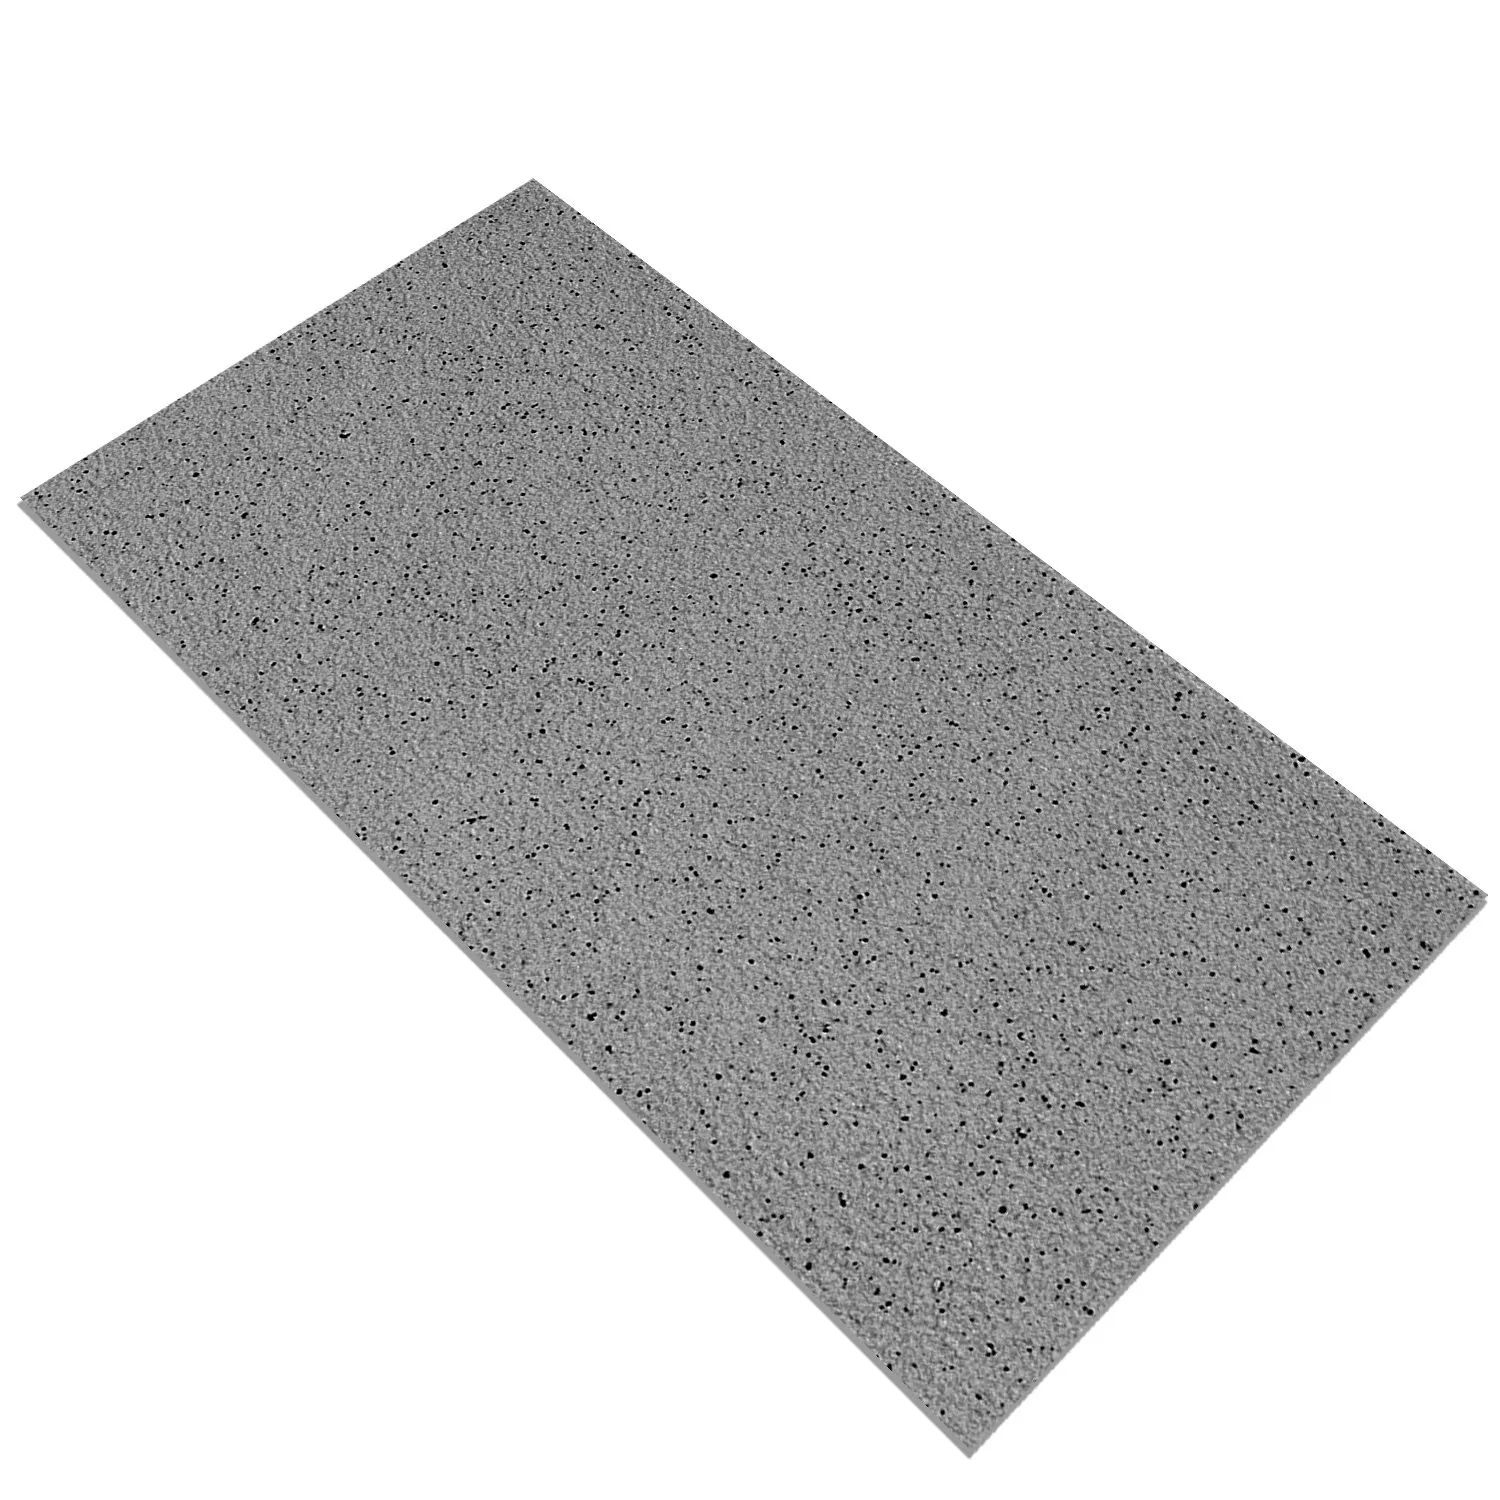 Floor Tiles Fine Grain R10/A Anthracite 30x60cm